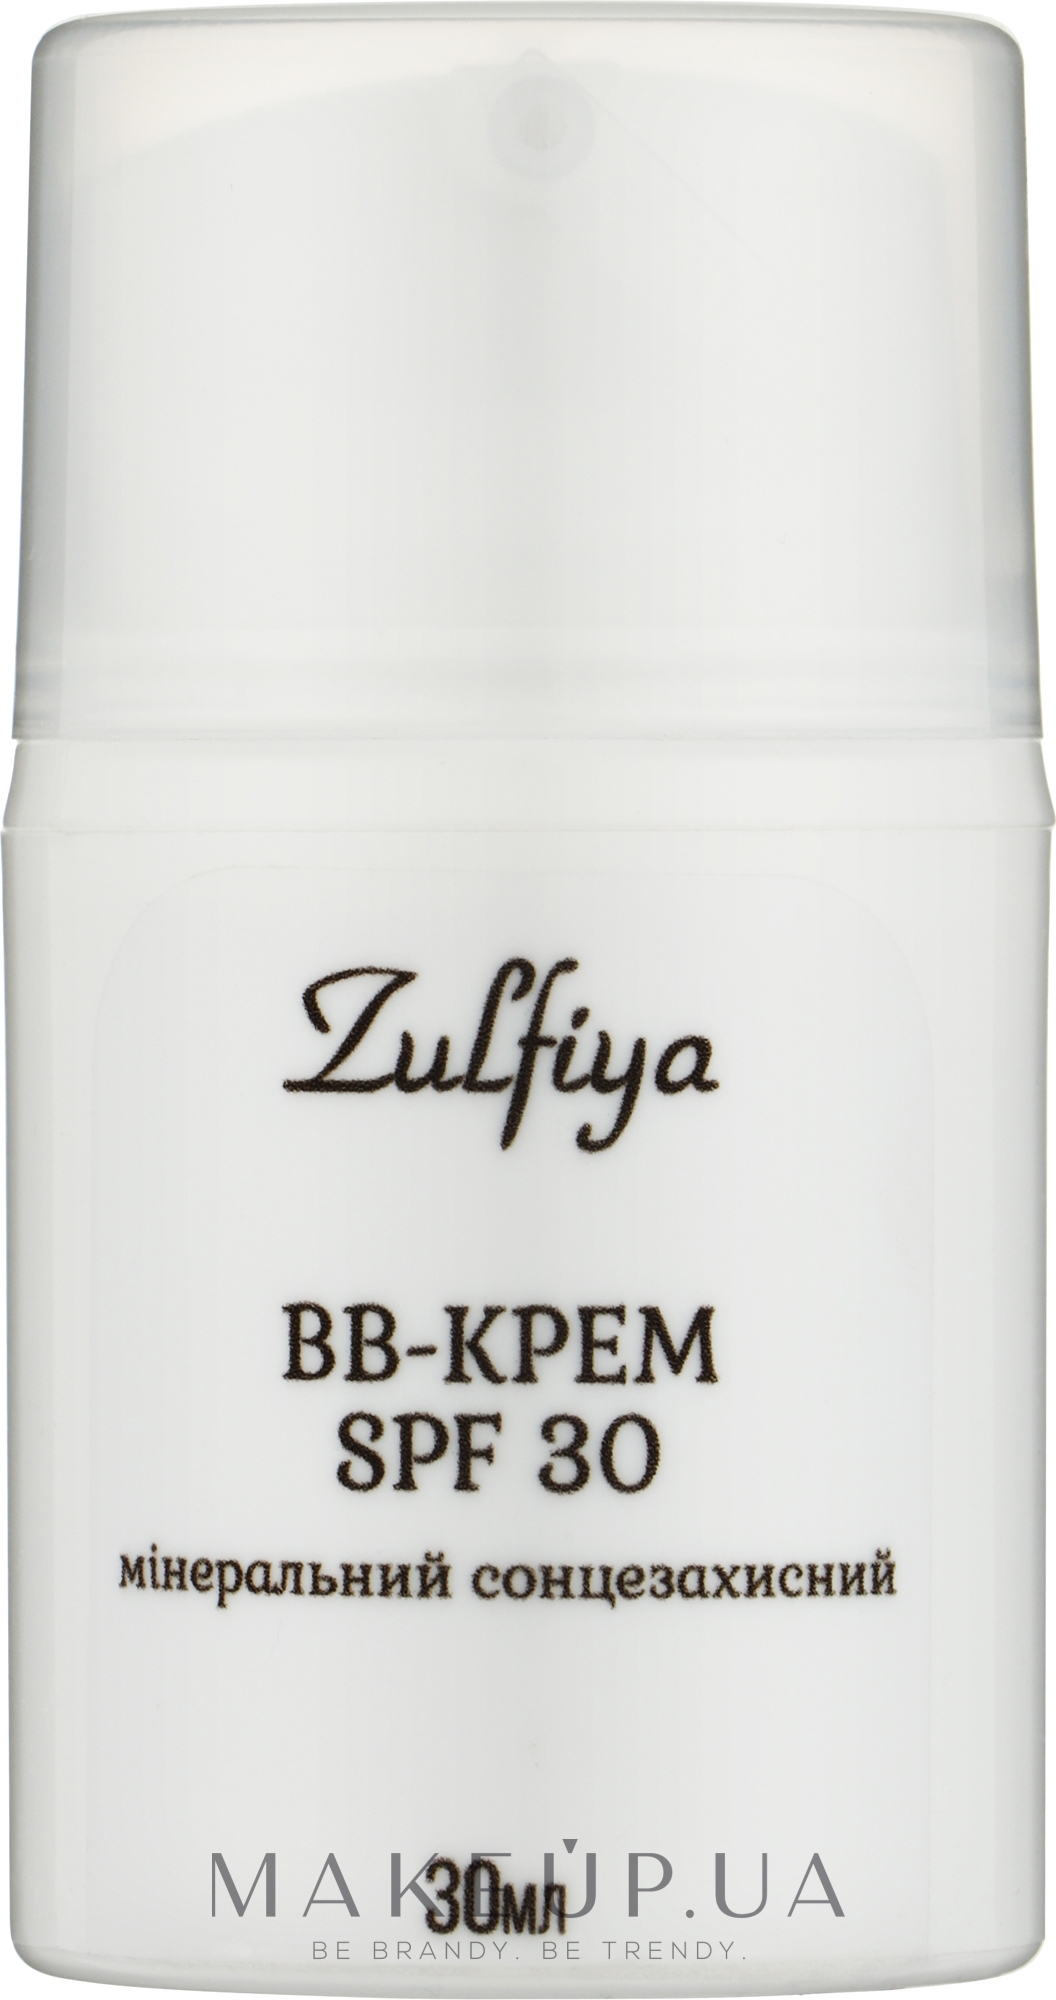 Минеральный солнцезащитный BB-крем для лица (SPF 30) - Zulfiya  — фото 30g